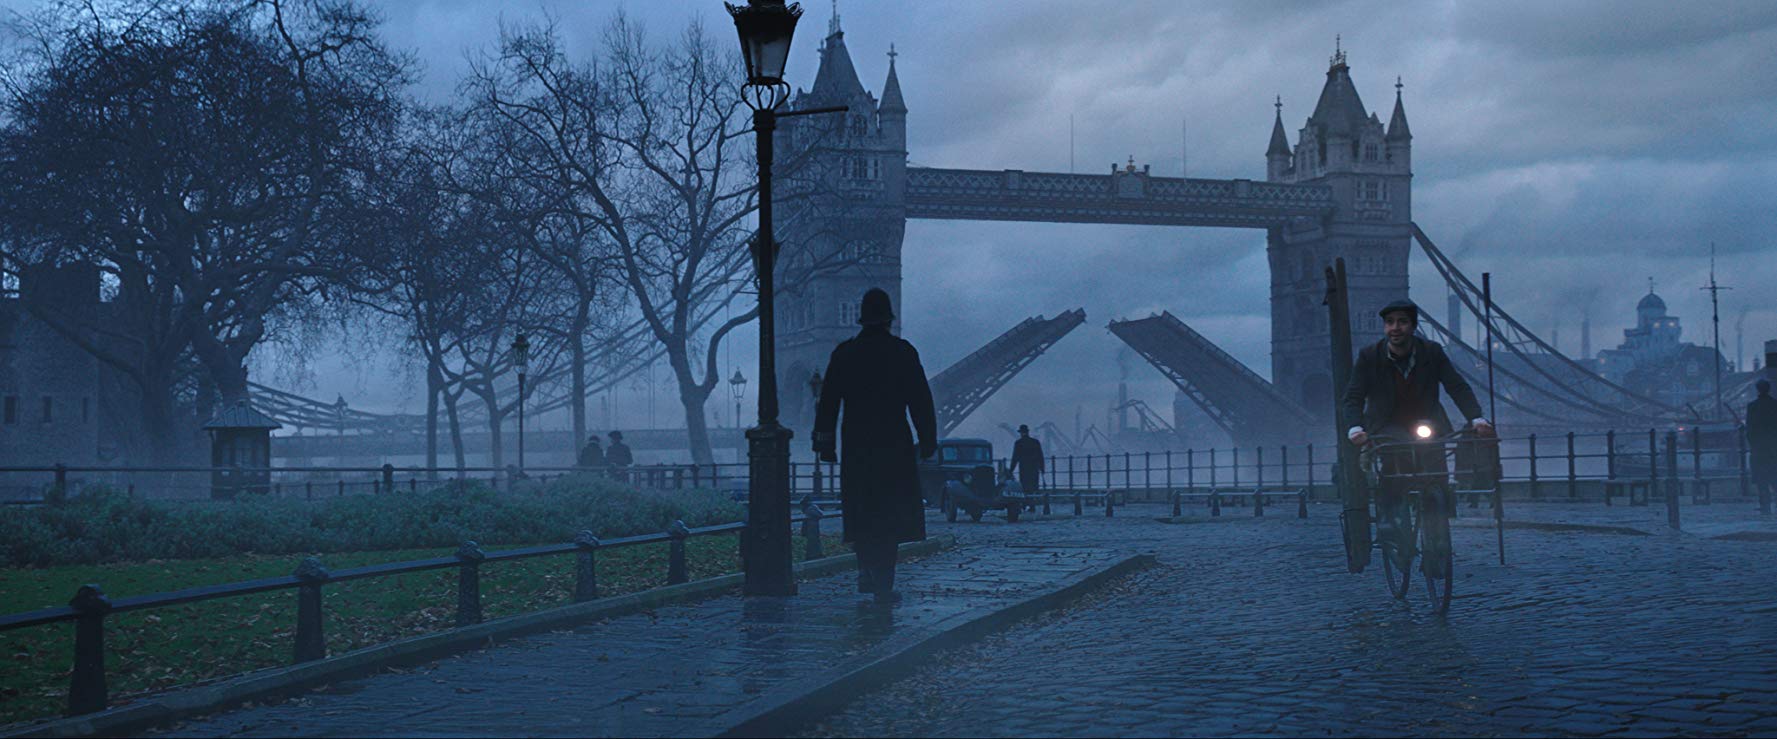 Il ponte di Londra Tower Bridgs - Il ritorno di Mary Poppins